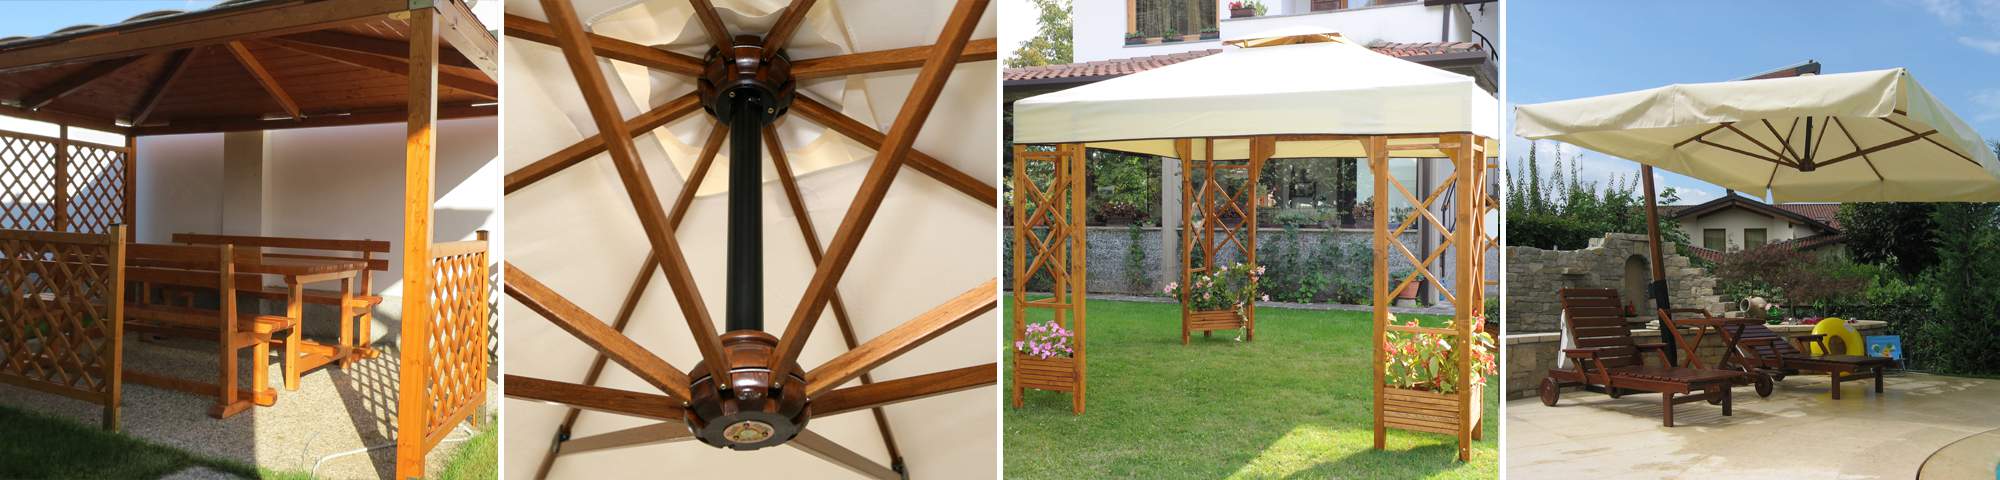 I nostri prodotti: mobili da giardino in legno, ombrelloni, strutture da esterni in legno